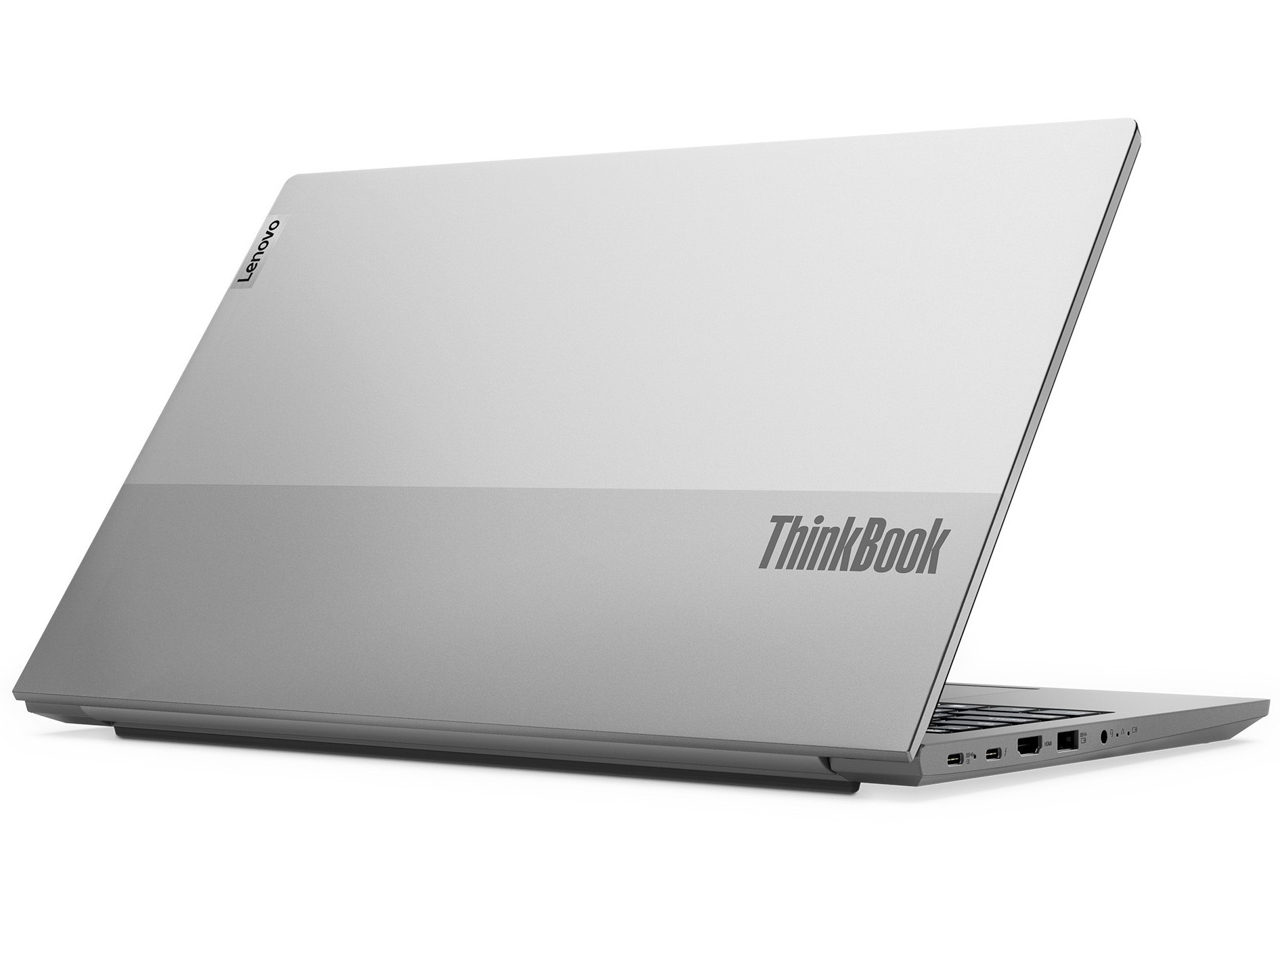 Bộ đôi ThinkBook Gen 3 có thiết kế mỏng nhẹ